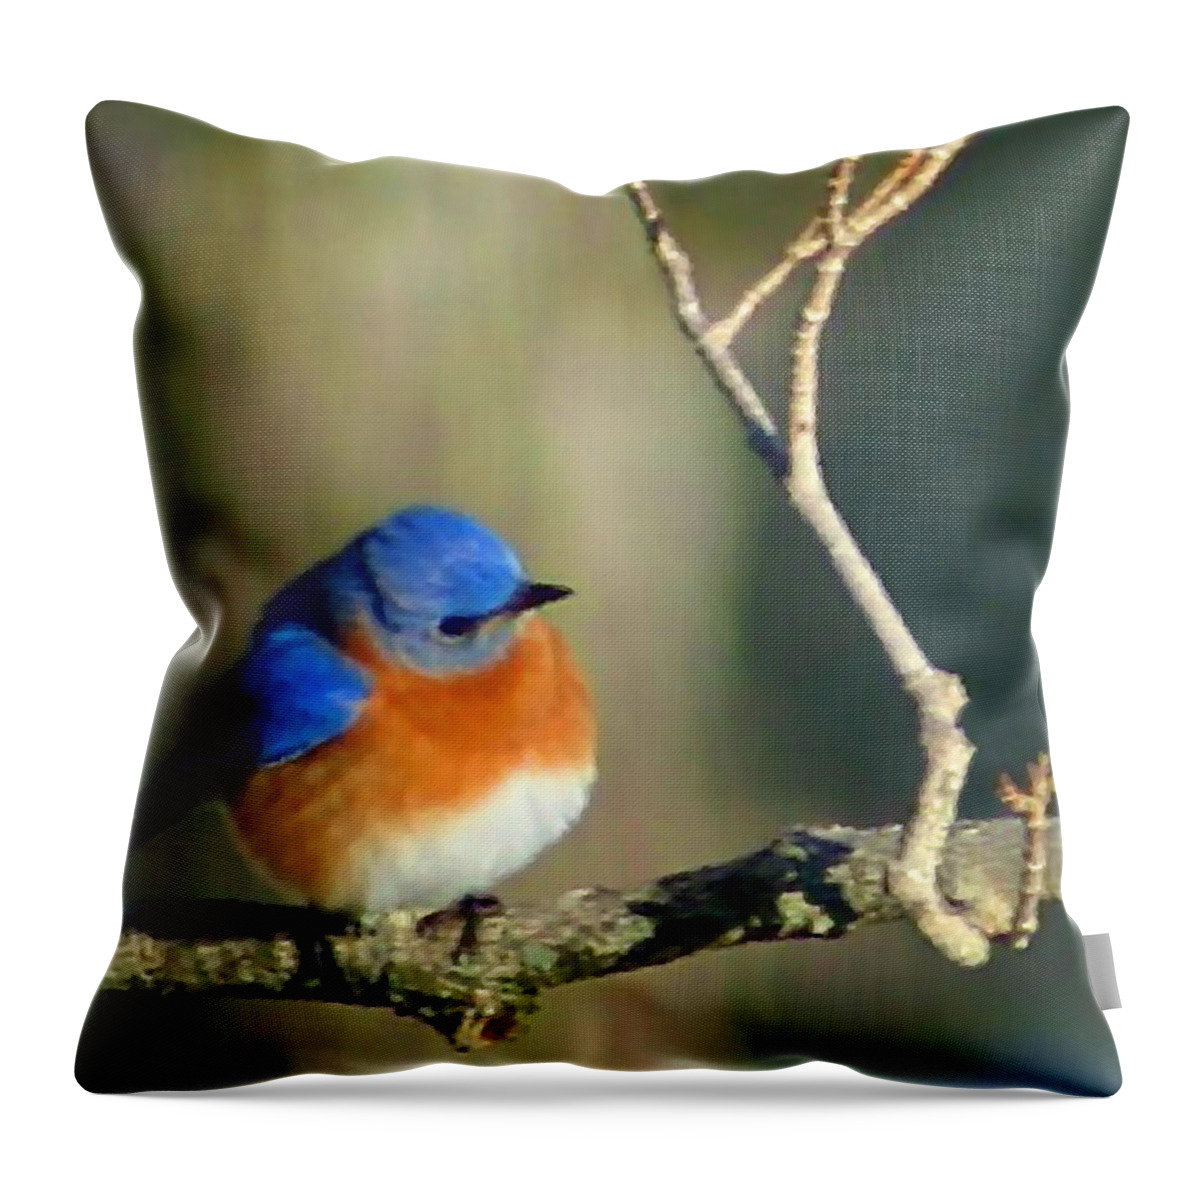 Bluebird Throw Pillow featuring the digital art Bluebird by Kristin Elmquist